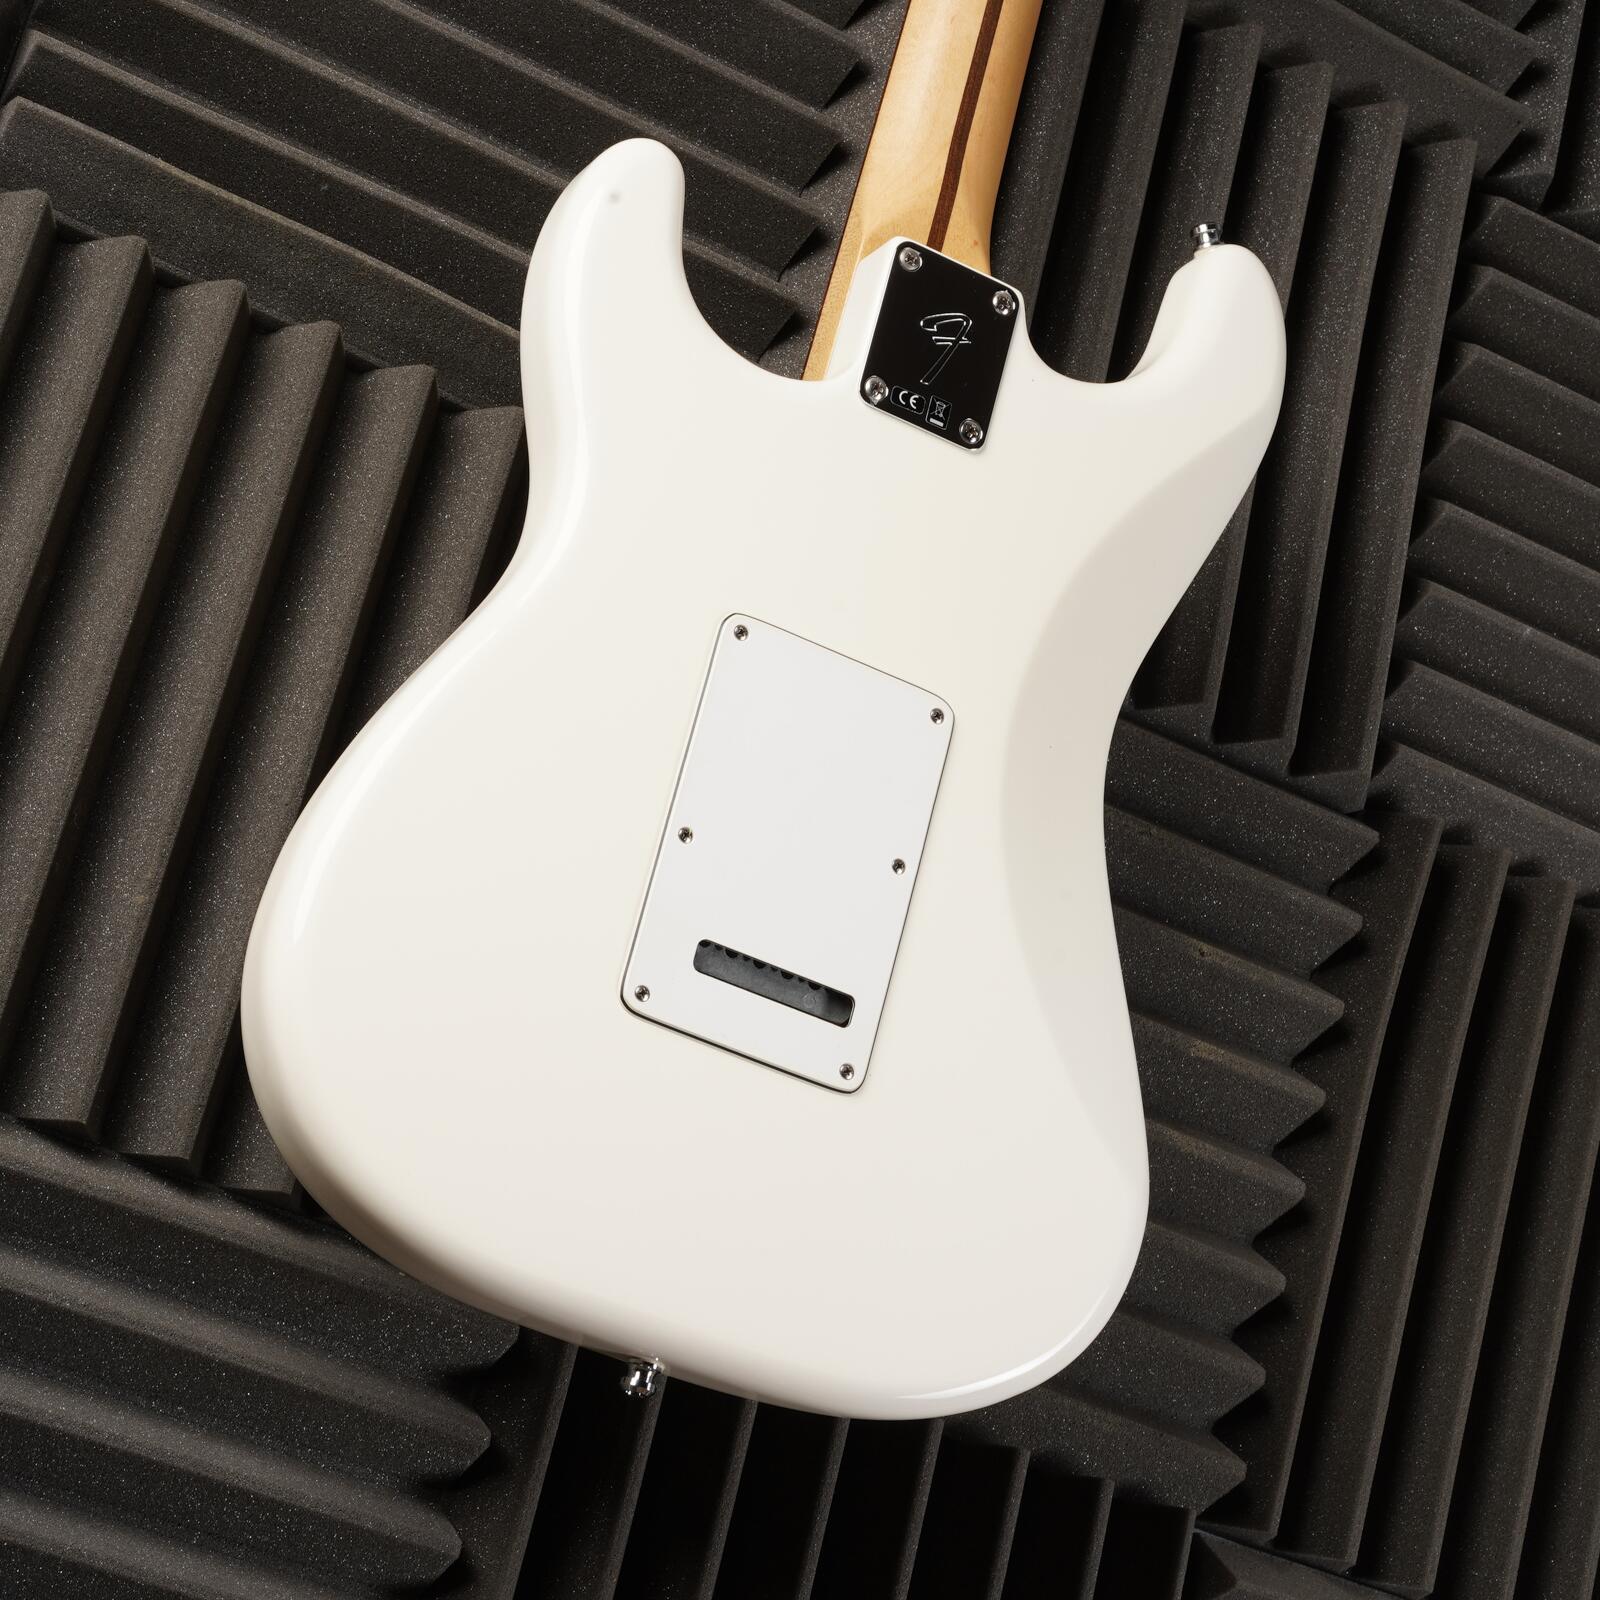 2019 Fender Player Stratocaster Polar White - Newell's Music